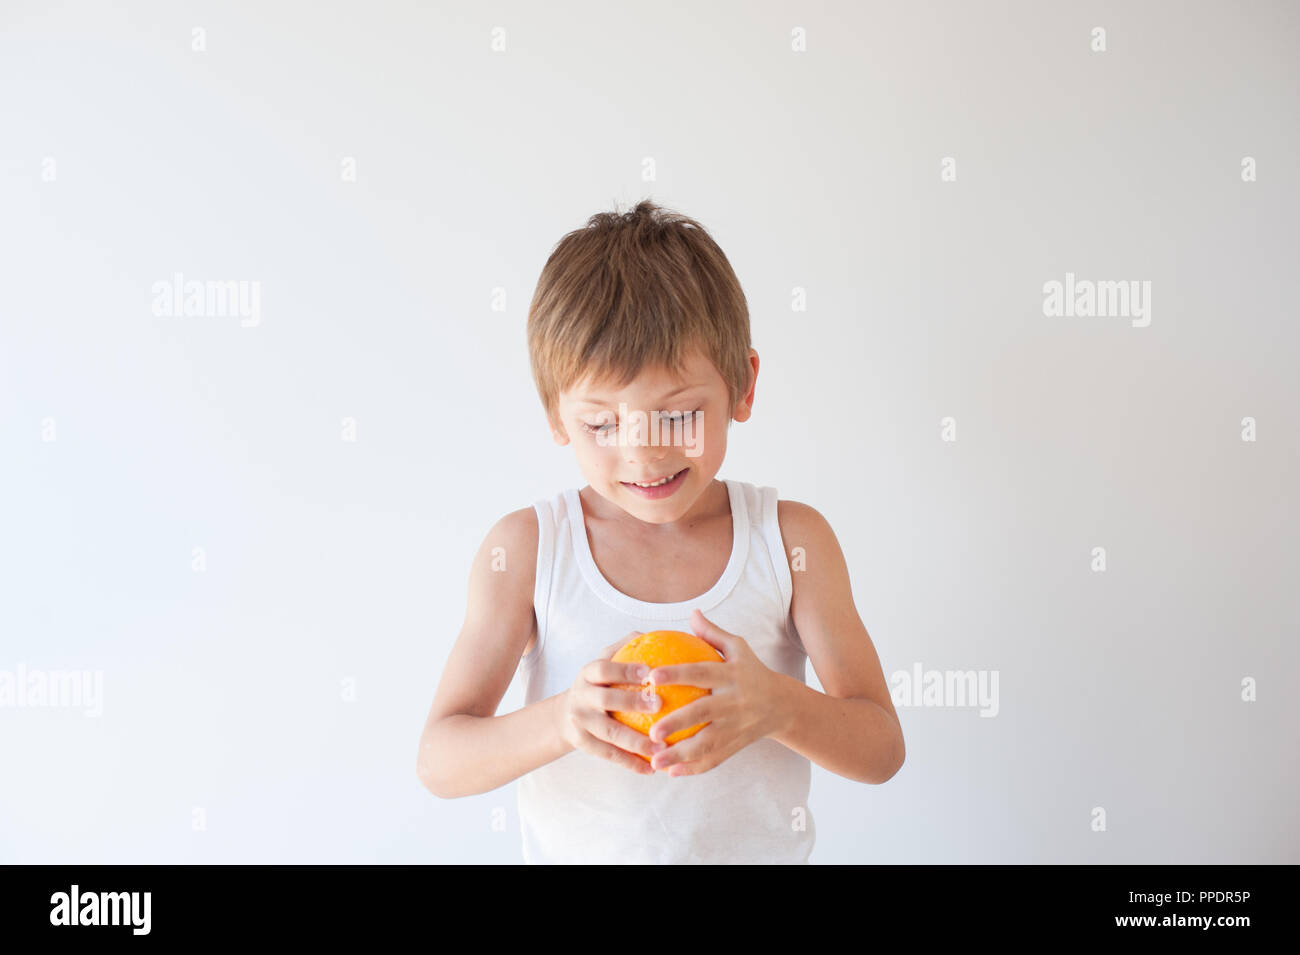 Gesunde kleine Kind in weißem T-Shirt, orange Frucht auf weißem Hintergrund Stockfoto